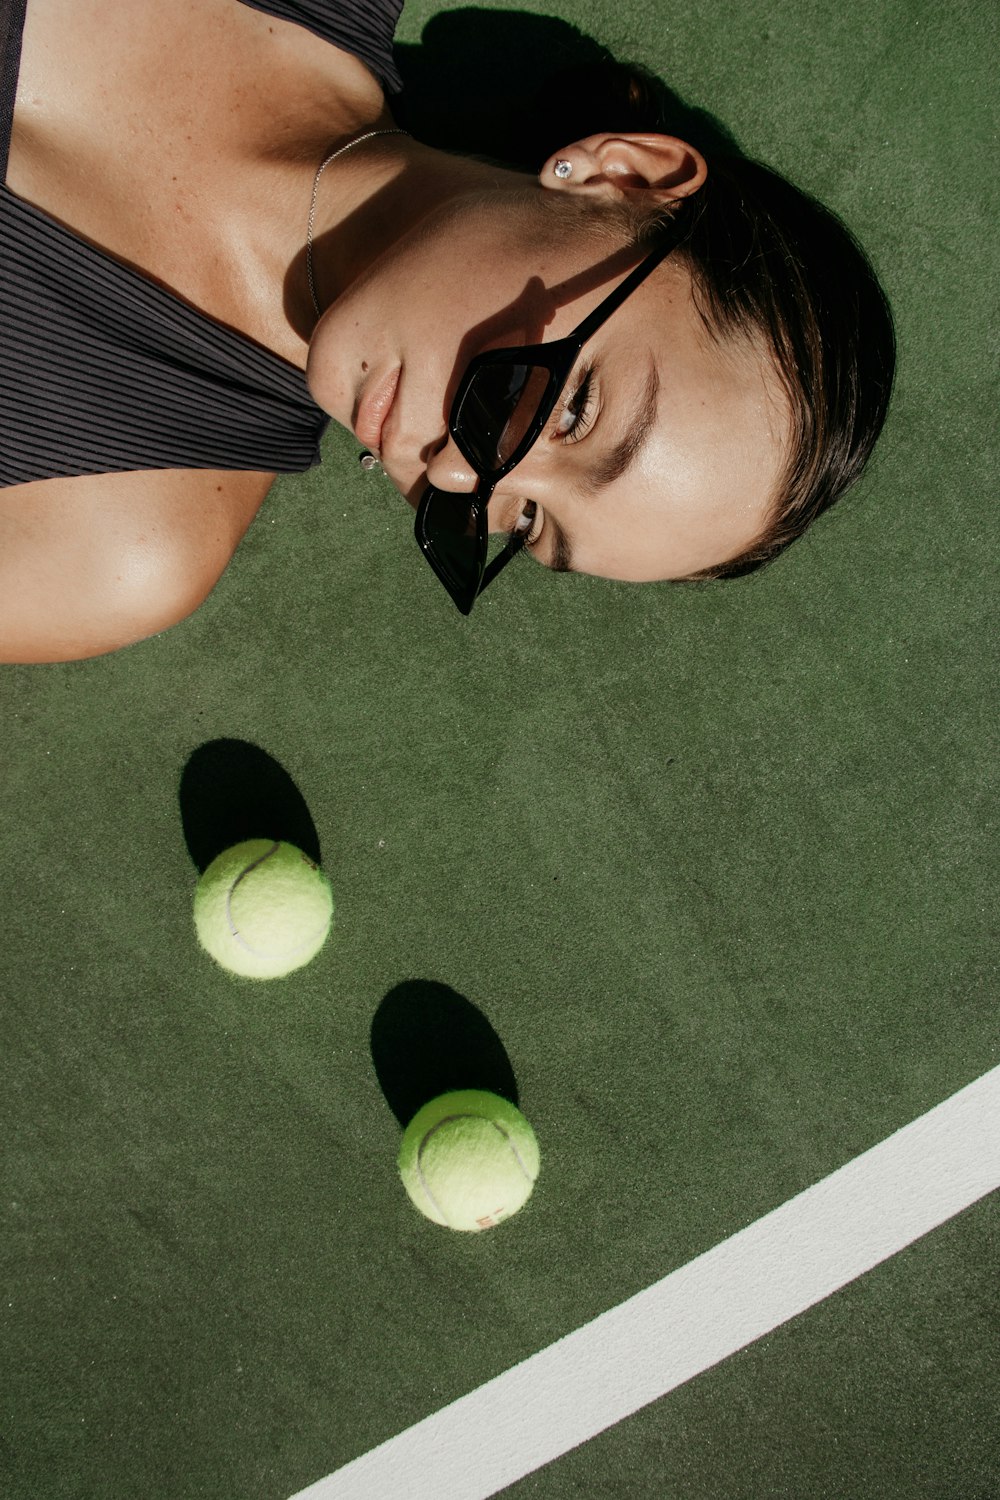 두 개의 녹색 테니스 공 옆에 누워있는 여자